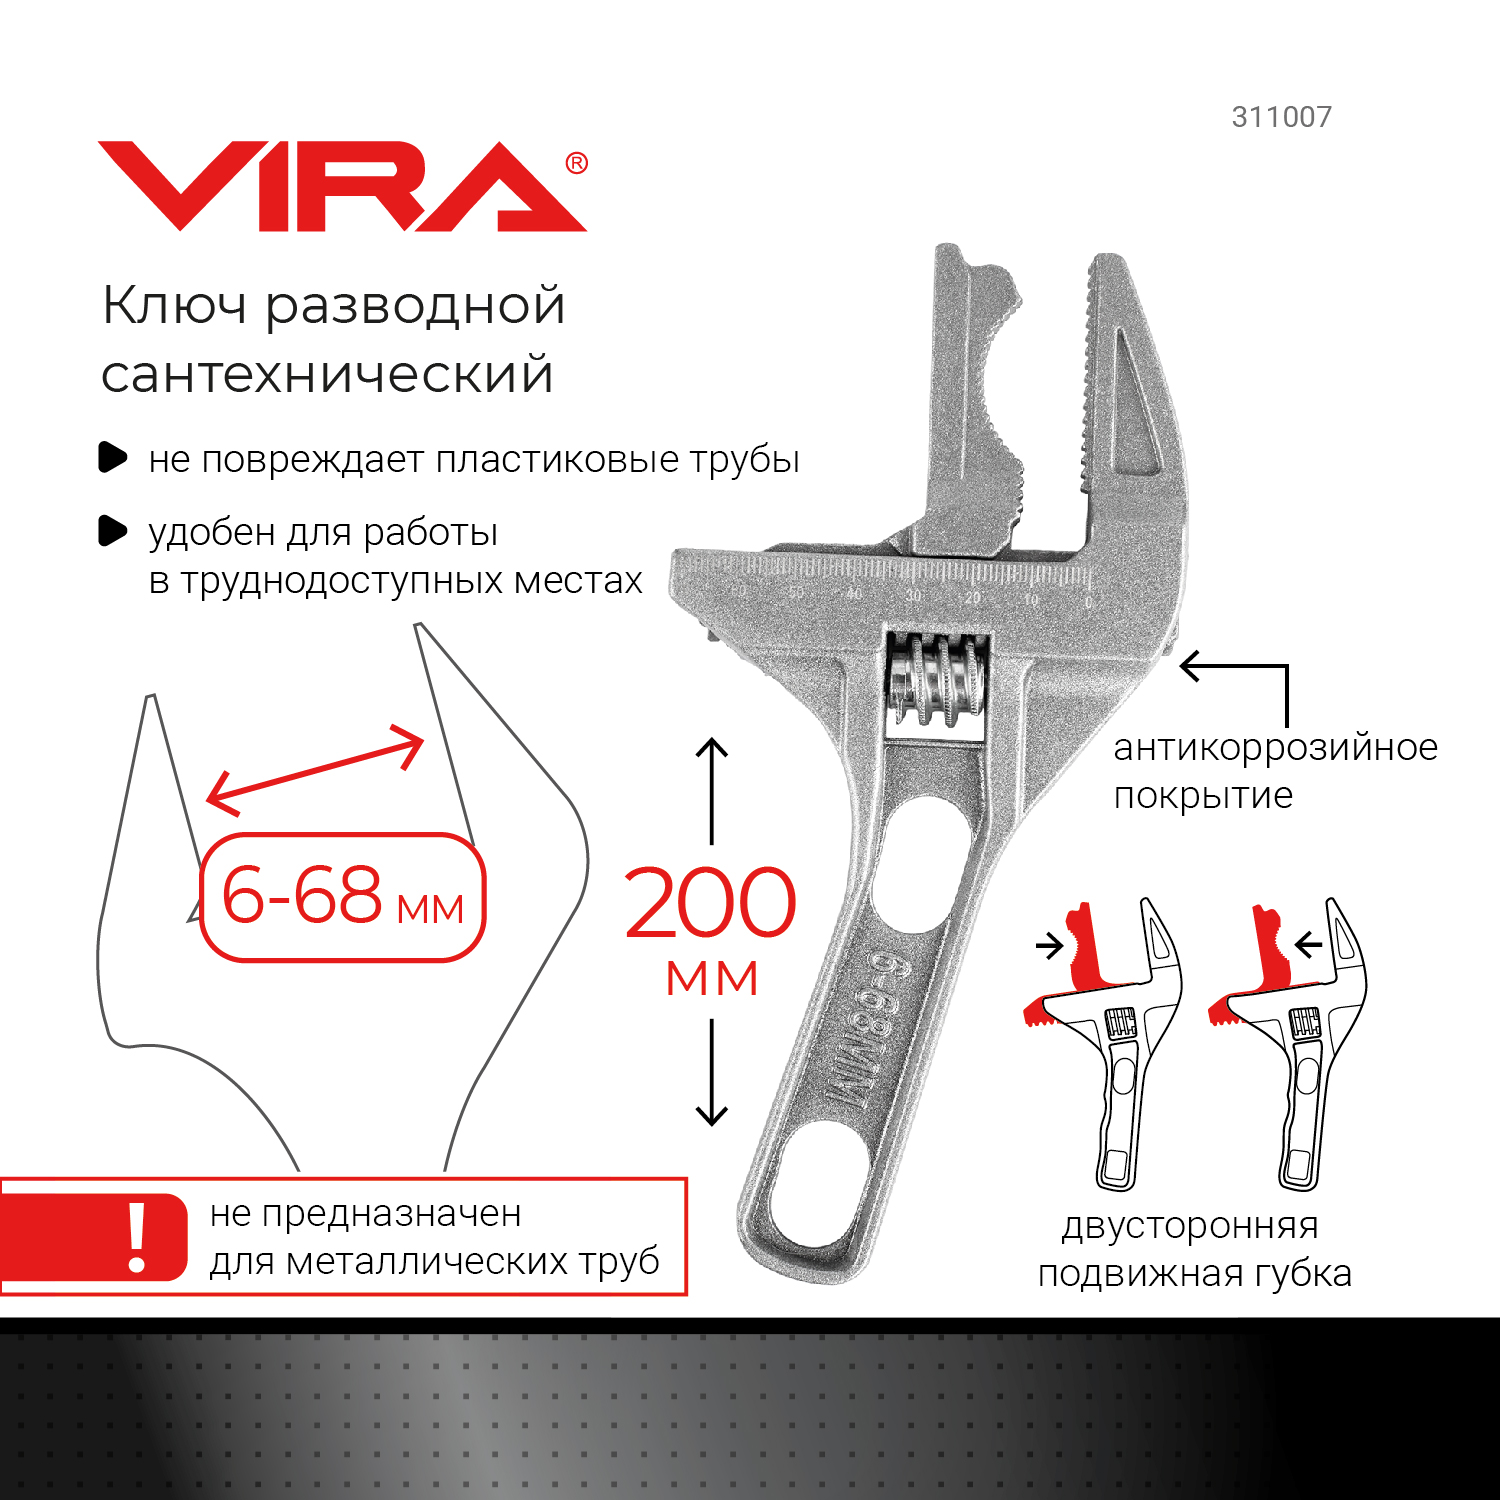 Разводной ключ VIRA 311007 сантехнический 6-68 мм с укороченной ручкой инструмент для квиллинга с акриловой ручкой длина 14 см 17х4 см